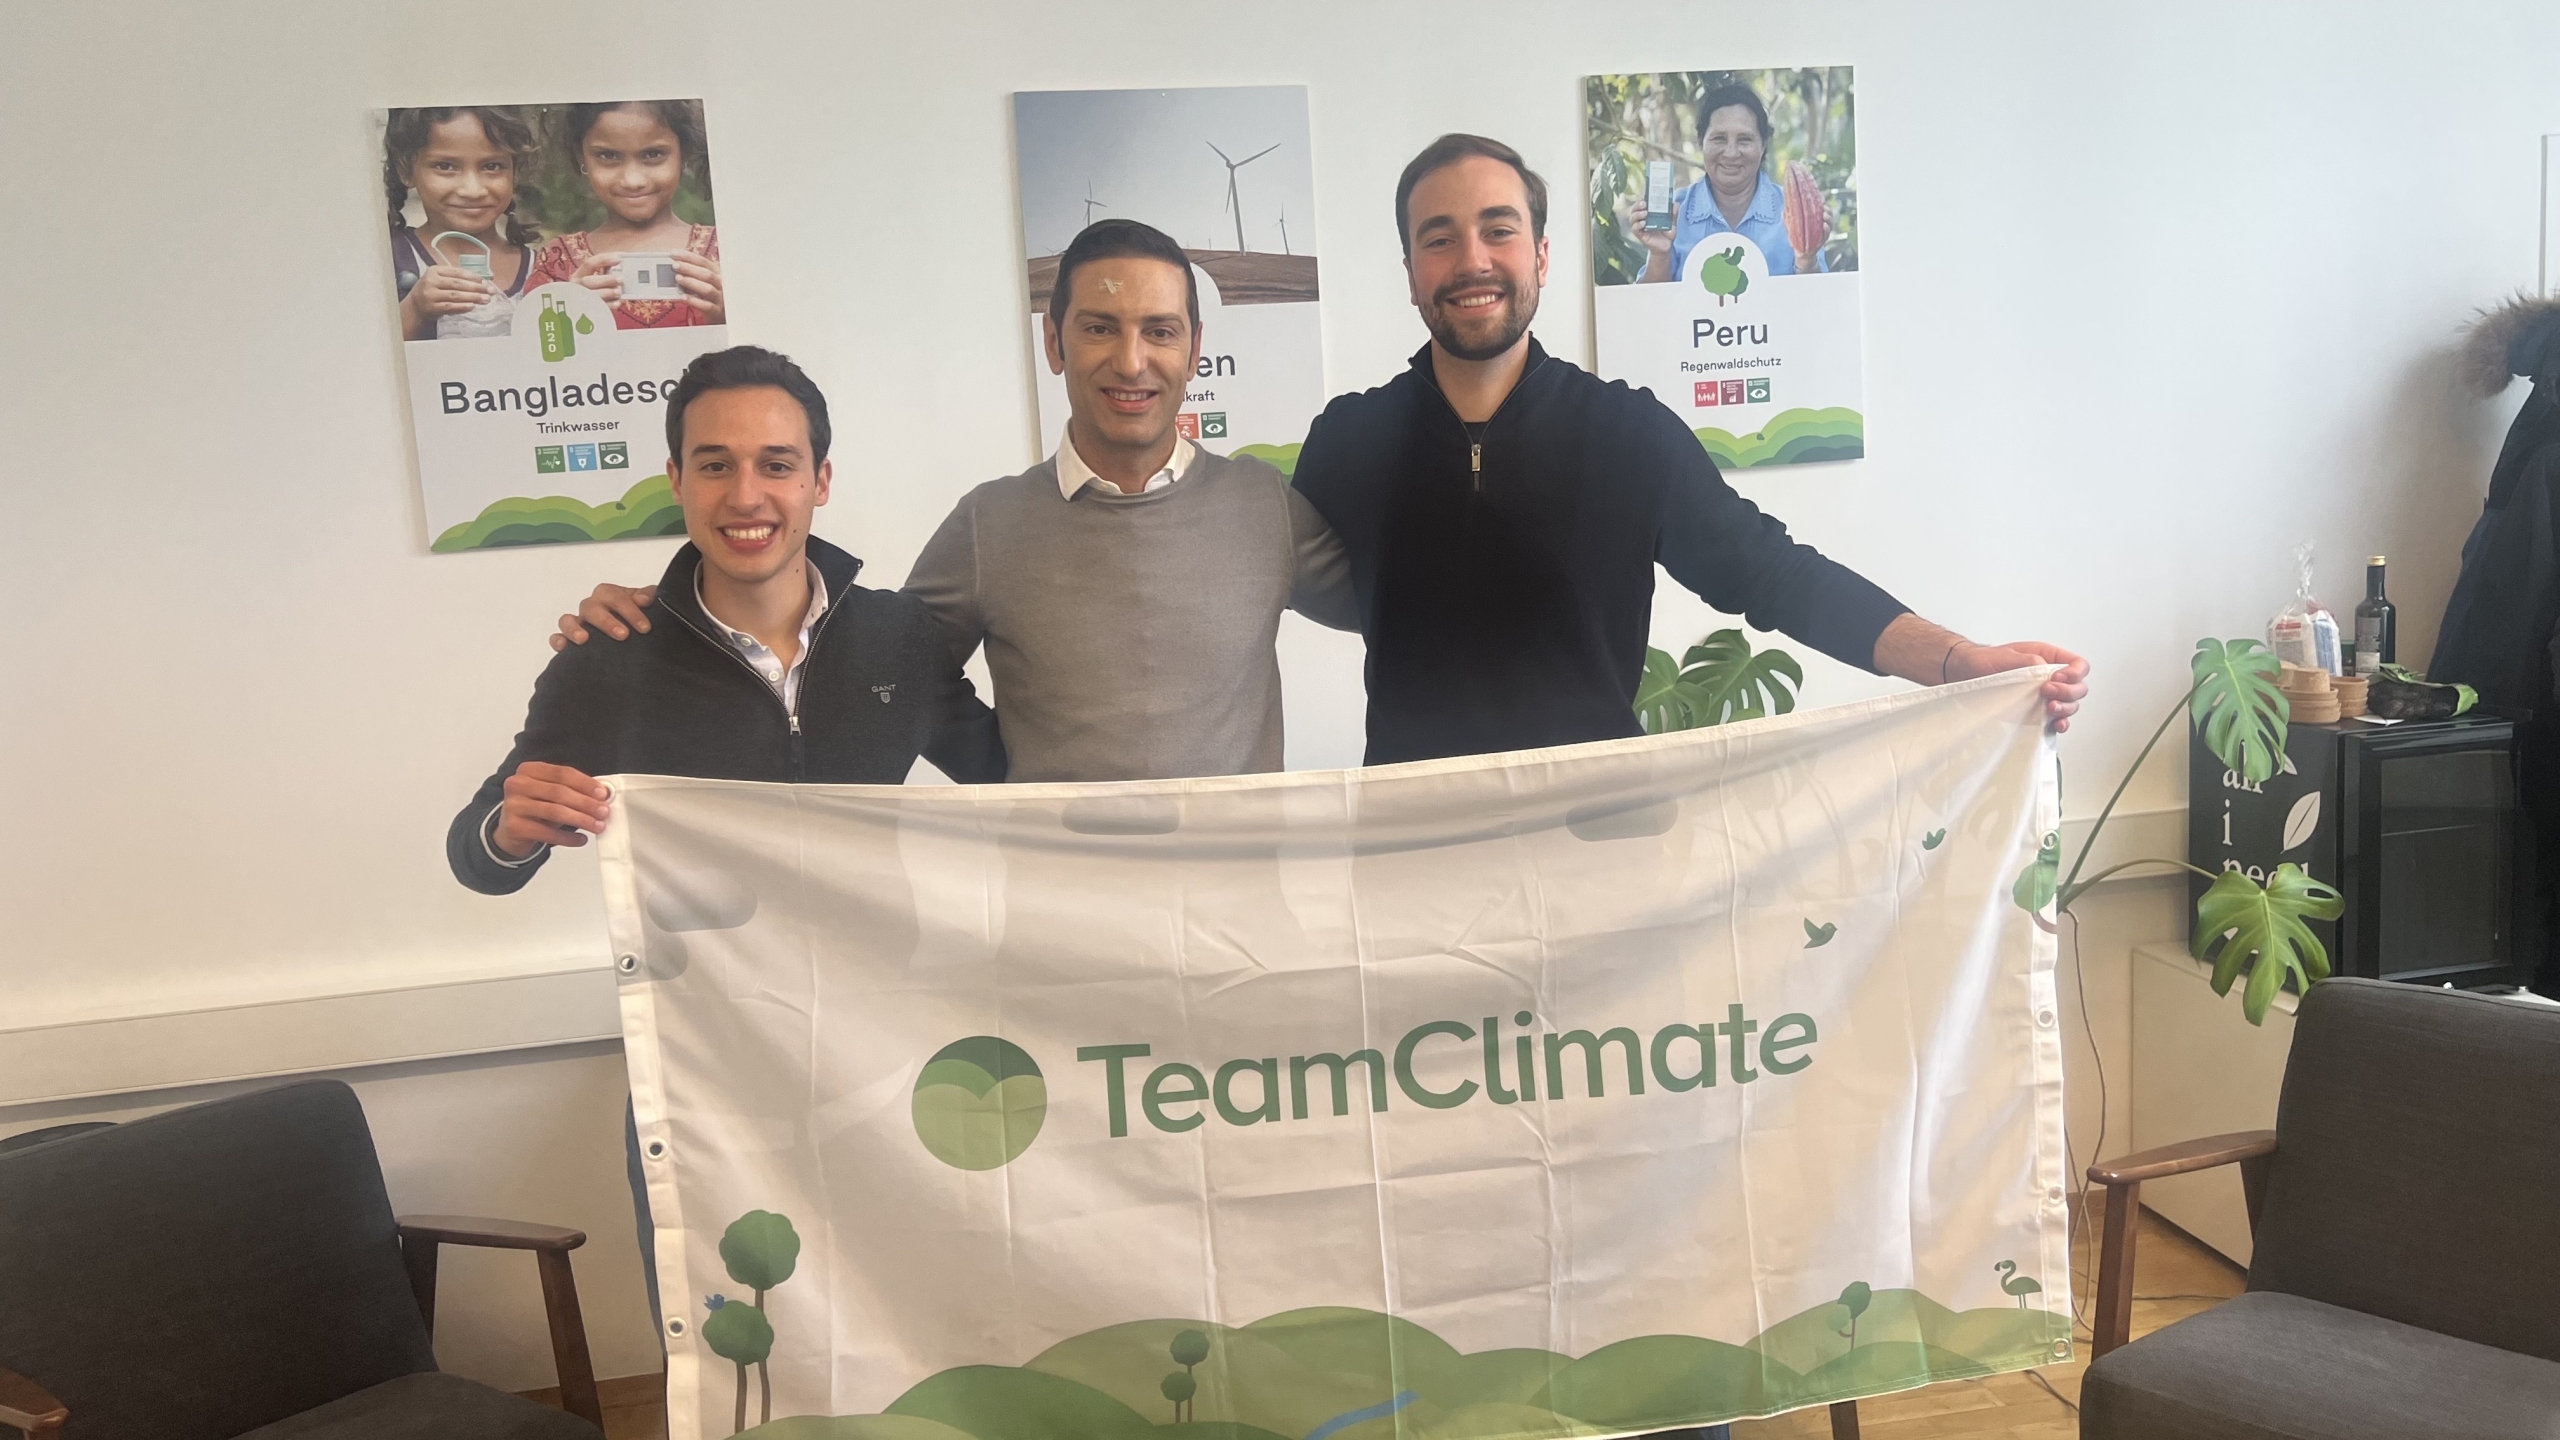 ClimateTrade adquire TeamClimate para oferecer compensação de carbono baseada em assinatura